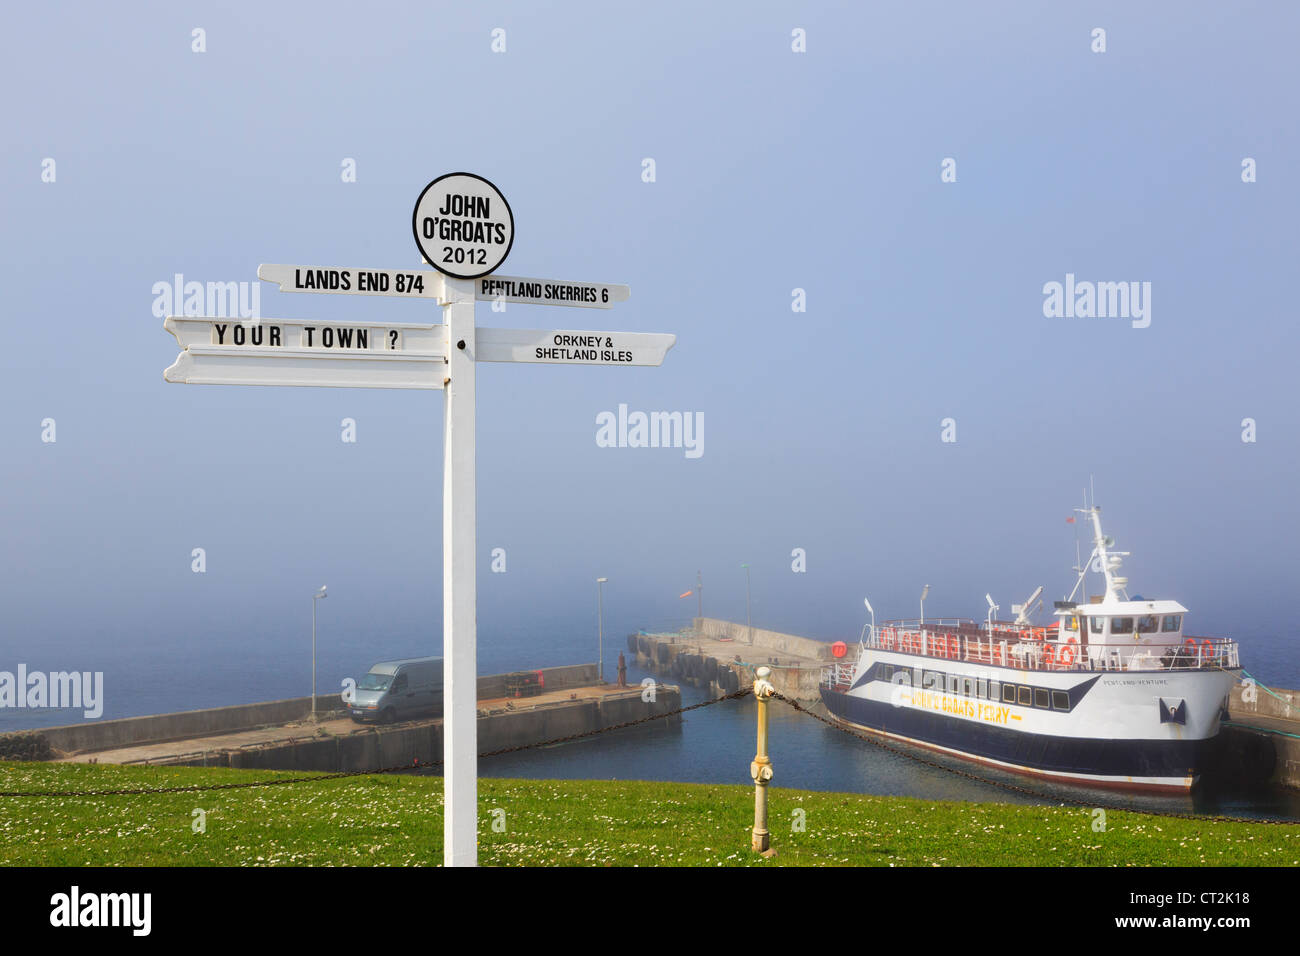 Szene mit Wegweiser und Fähre Schiff mit Meer Nebel an der nordöstlichen Küste in John o' Groats Caithness Schottland UK Großbritannien. Stockfoto